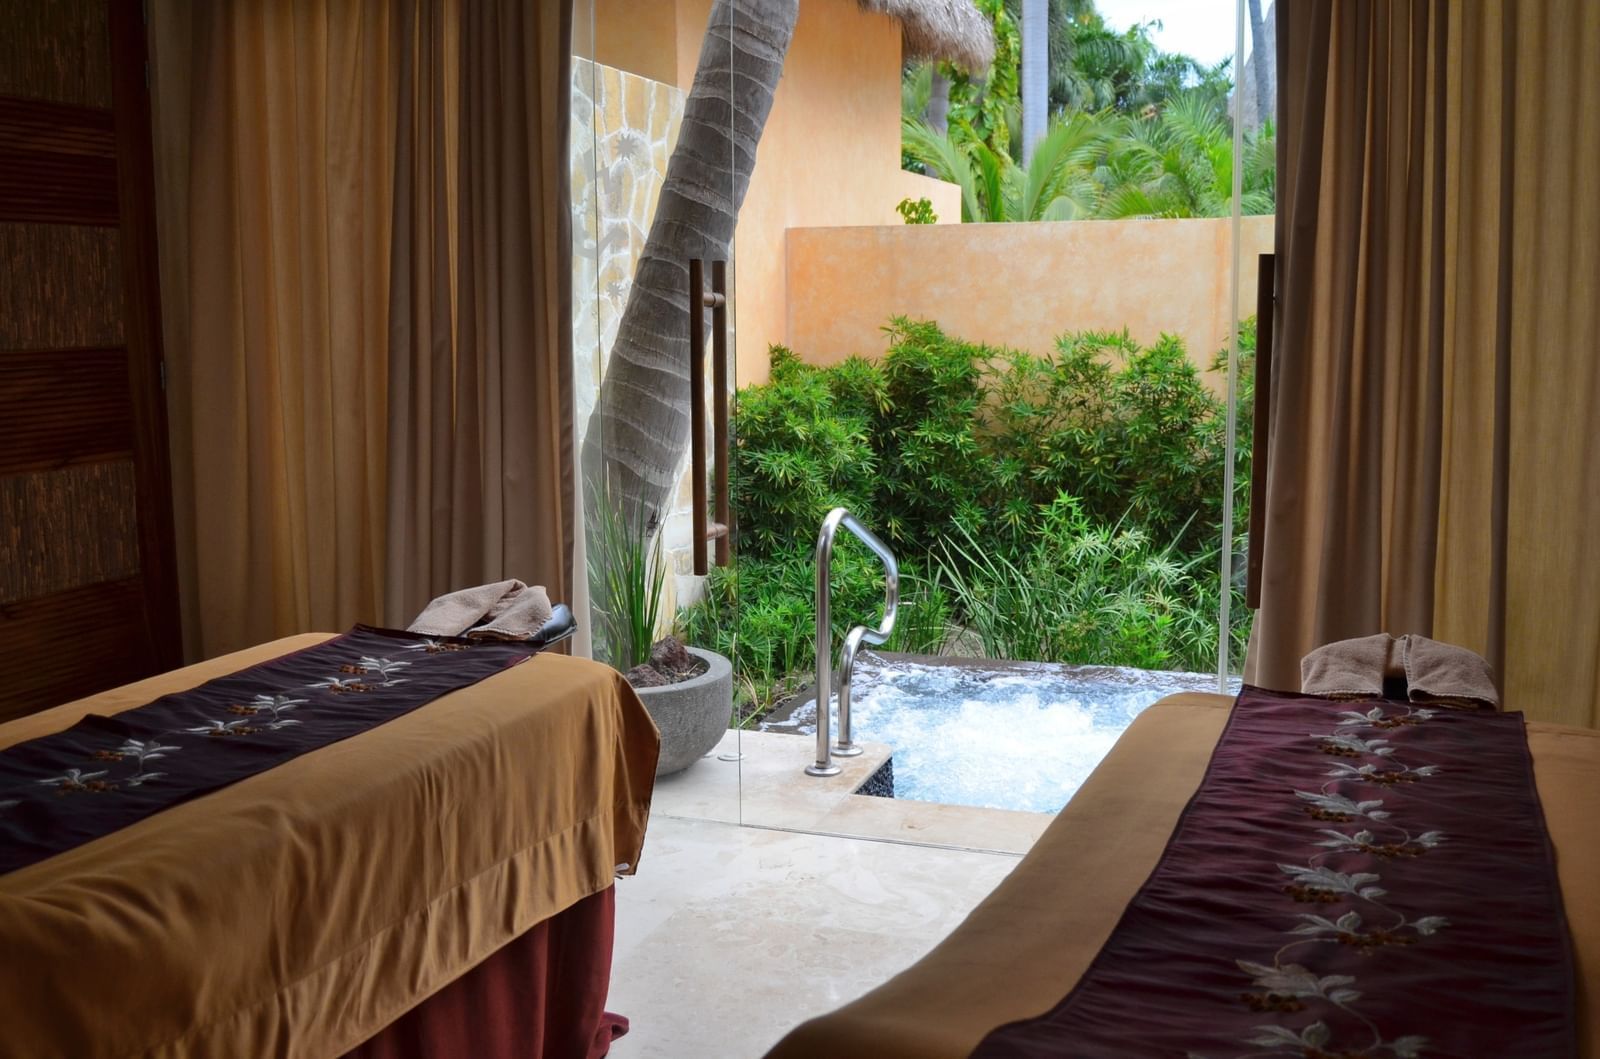 Private spa pool in a spa center at Fiesta Americana hotels